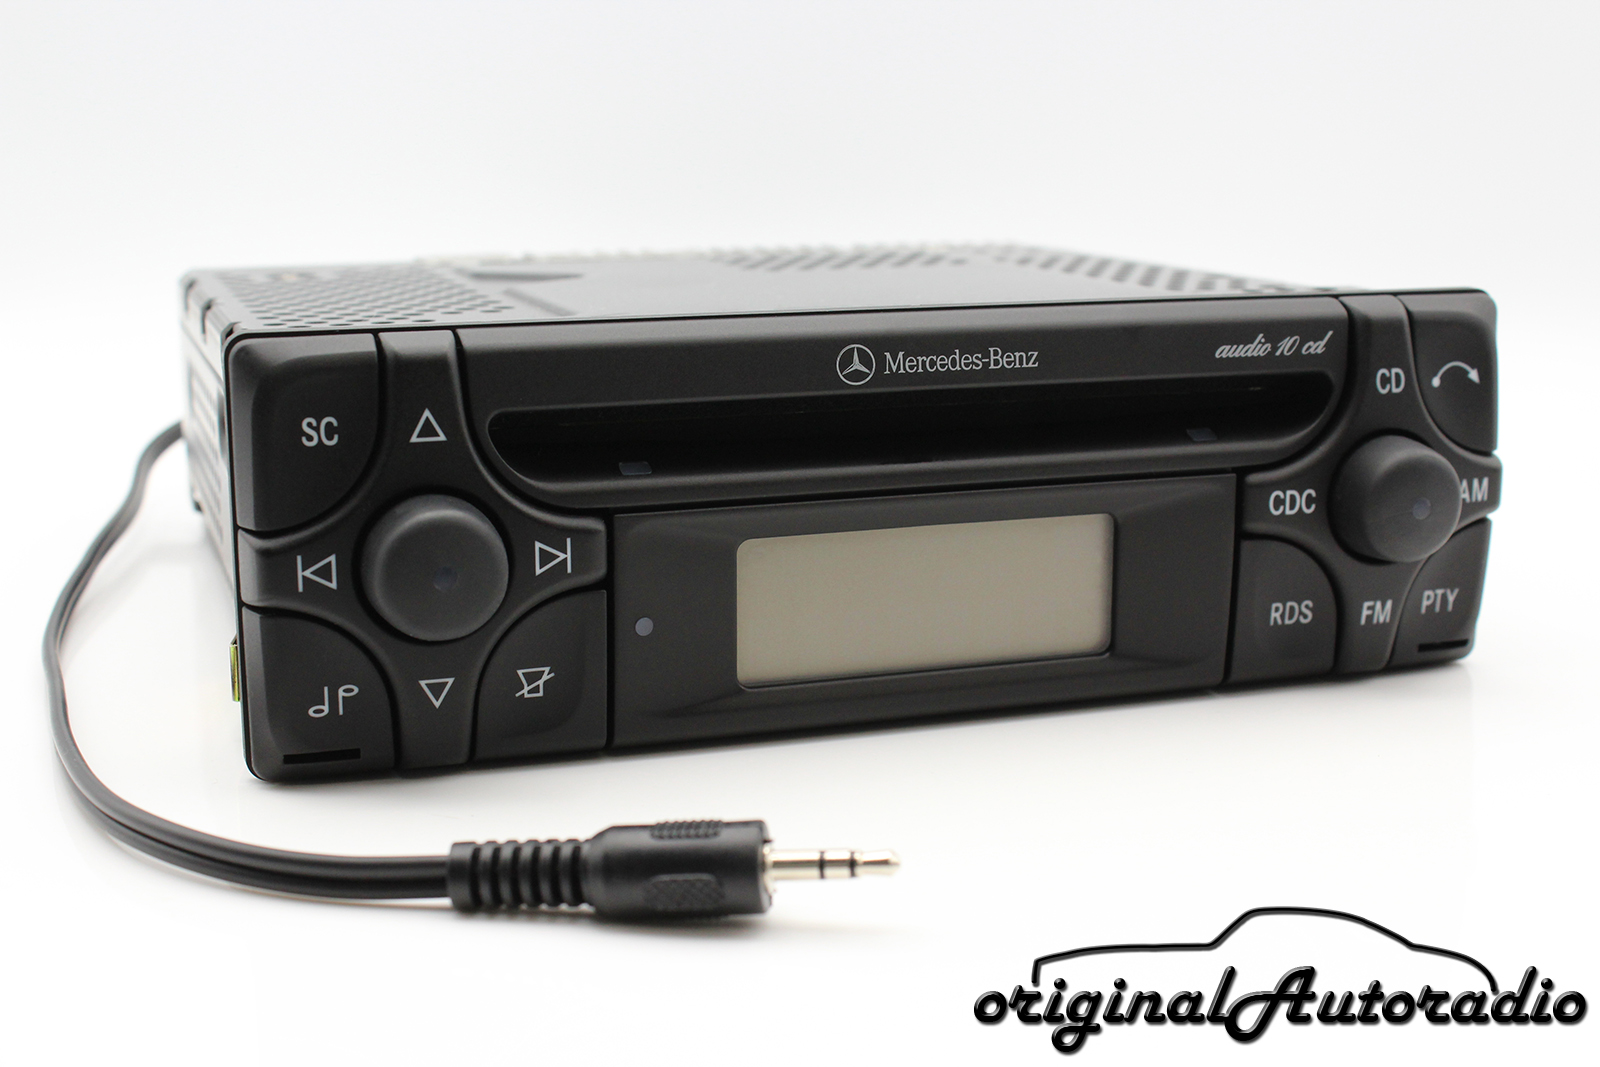 Mercedes audio 10 CD mf2910 Aux-in mp3 r170 autoradio w170 SLK-clase CD-R radio